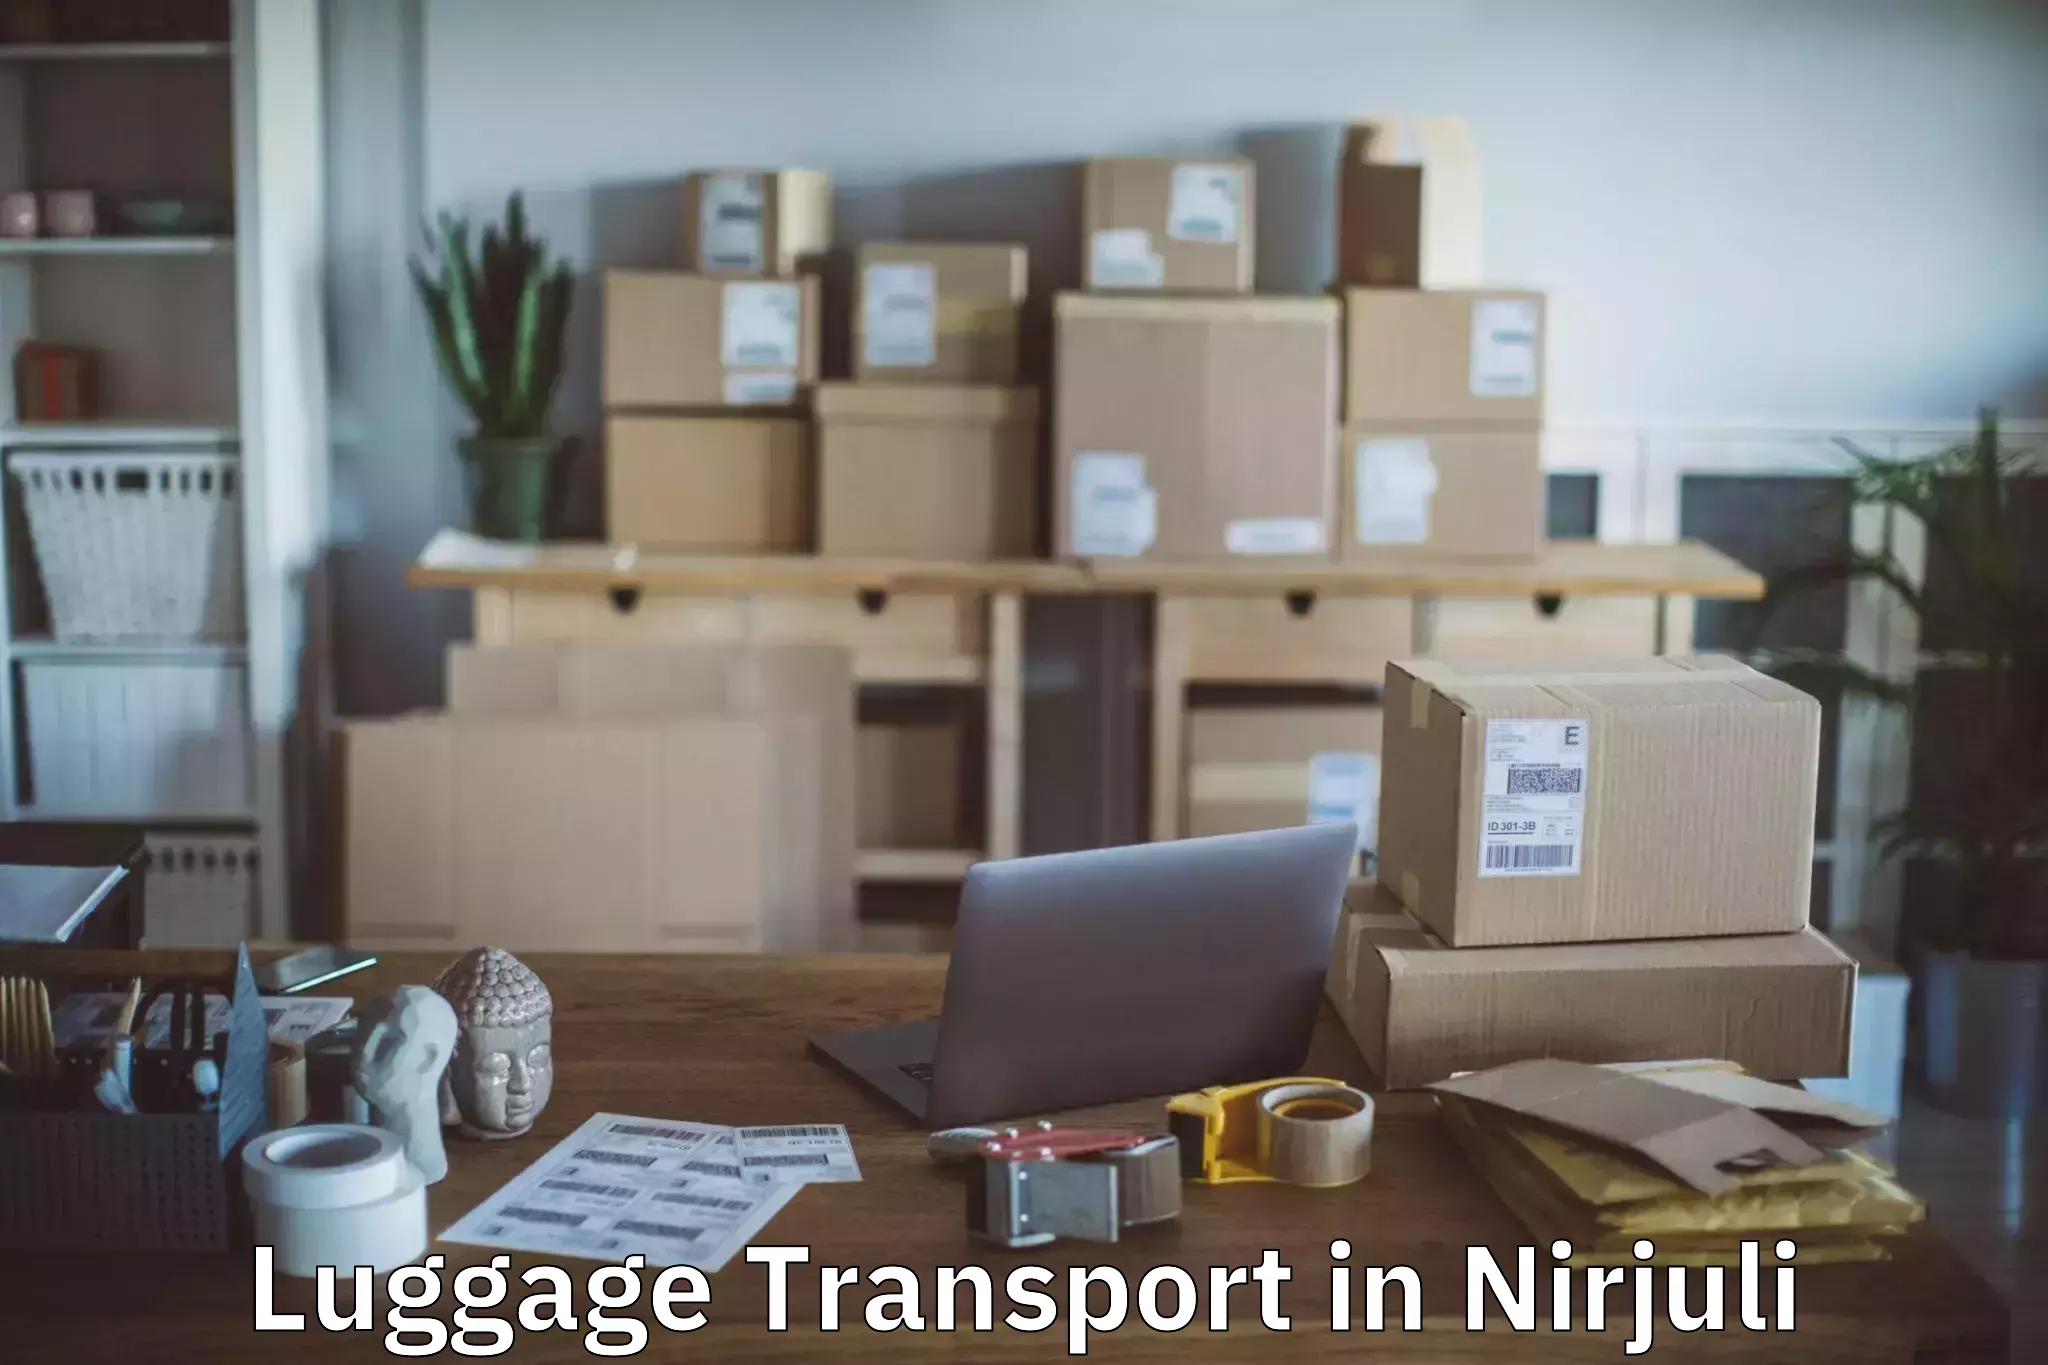 Luggage shipment processing in Nirjuli